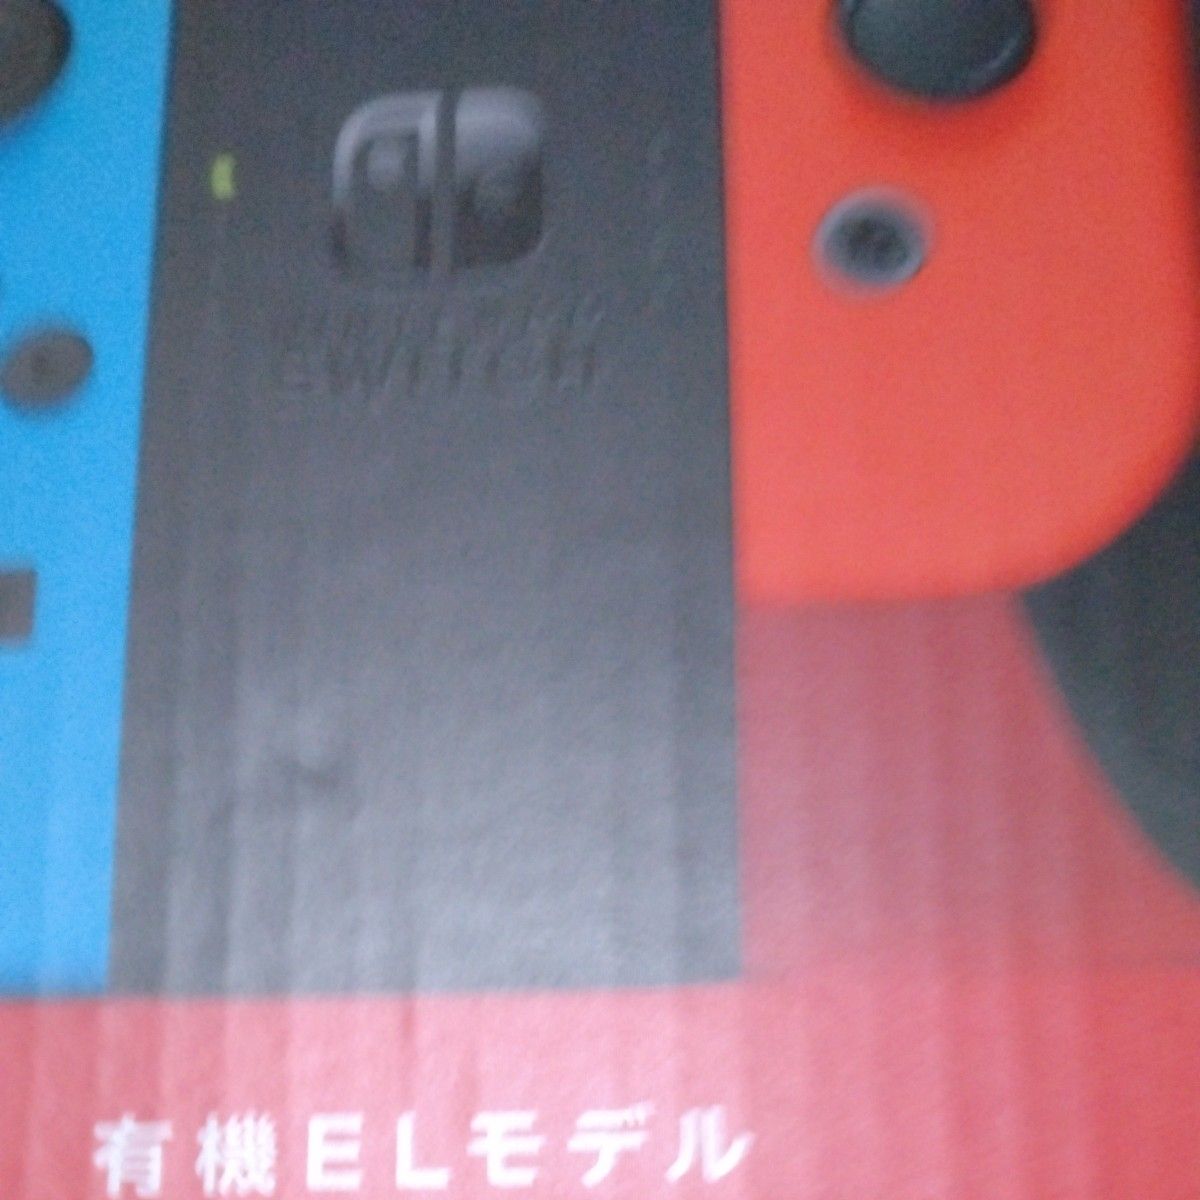 Nintendo Switch 有機ELモデル ネオンブルー ネオンレッド